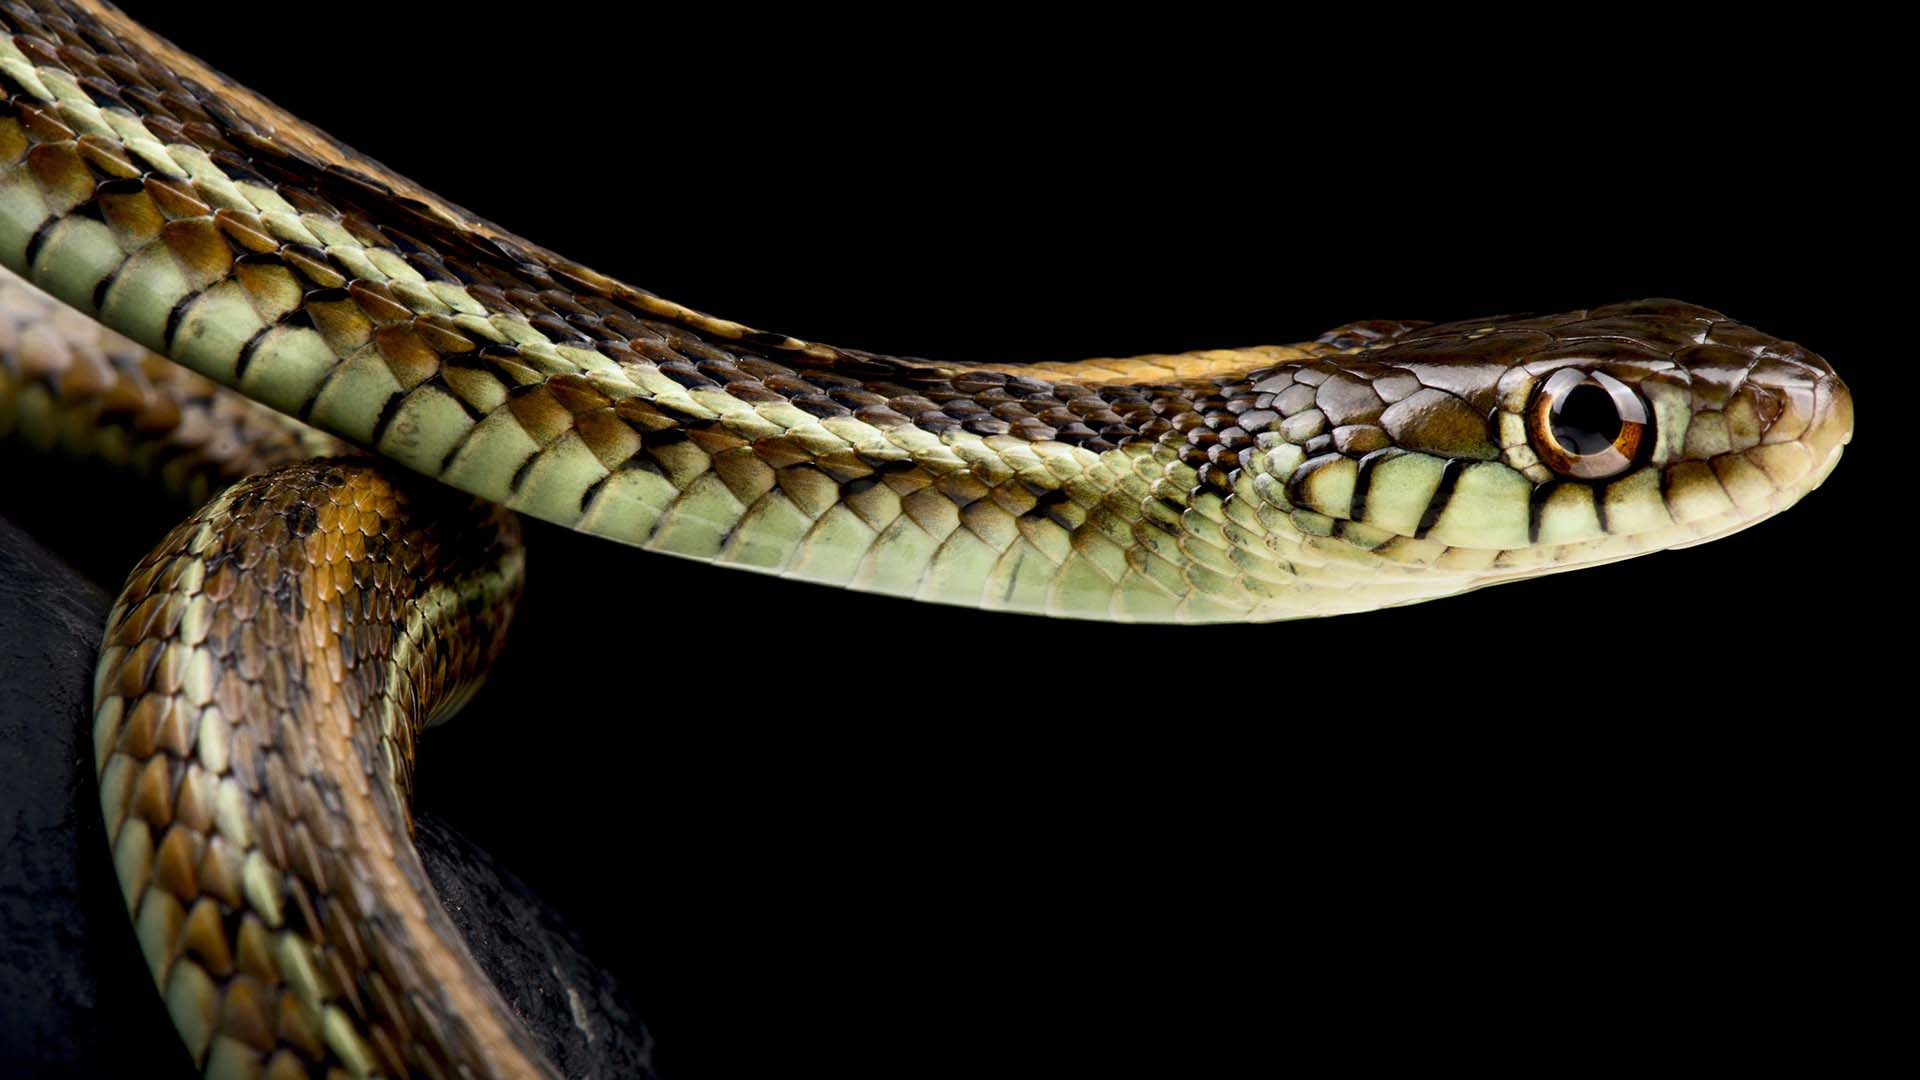 Las serpientes de liga de dos rayas andan en sus madrigueras esparciendo feromonas  (Matthijs Kuijpers)